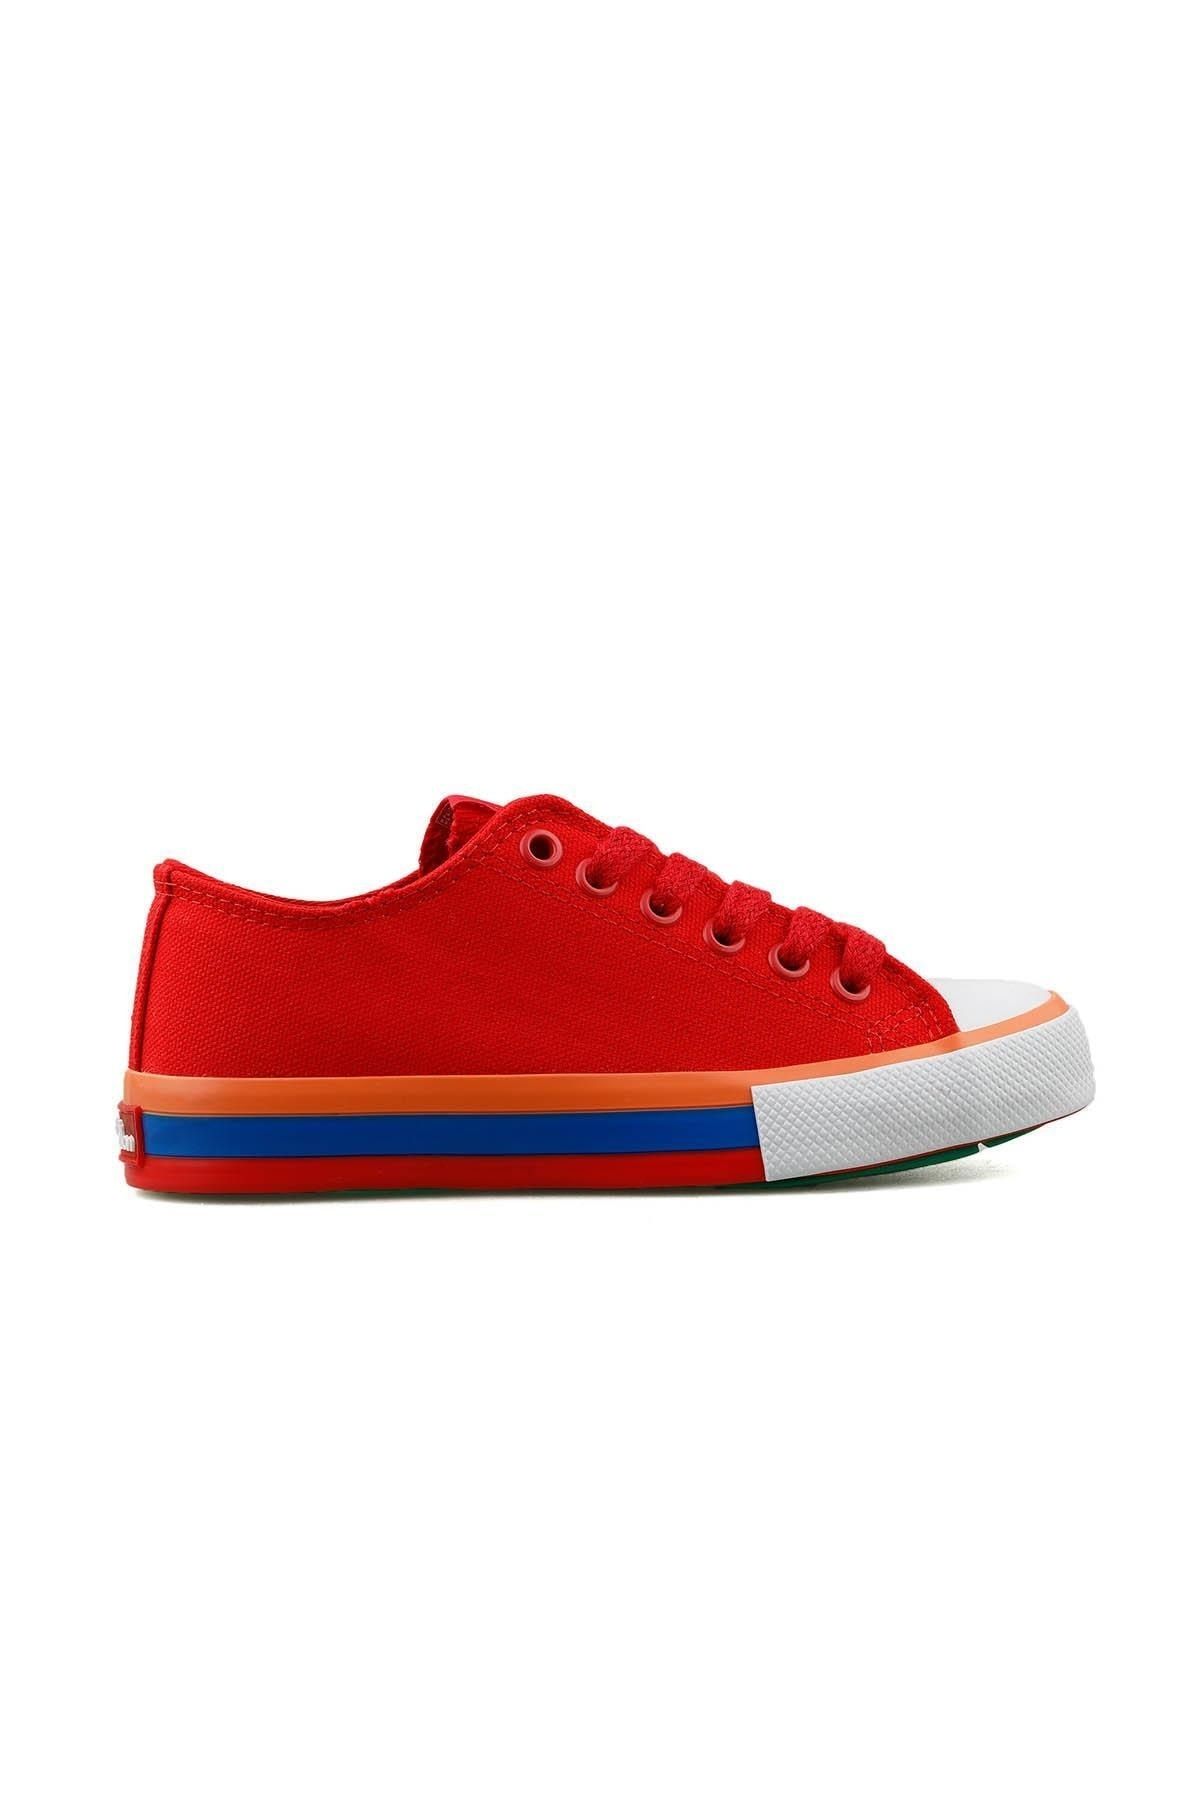 Benetton ® Orijinal Yeni Sezon Kadın Spor Ayakkabı Bn30176 Kırmızı